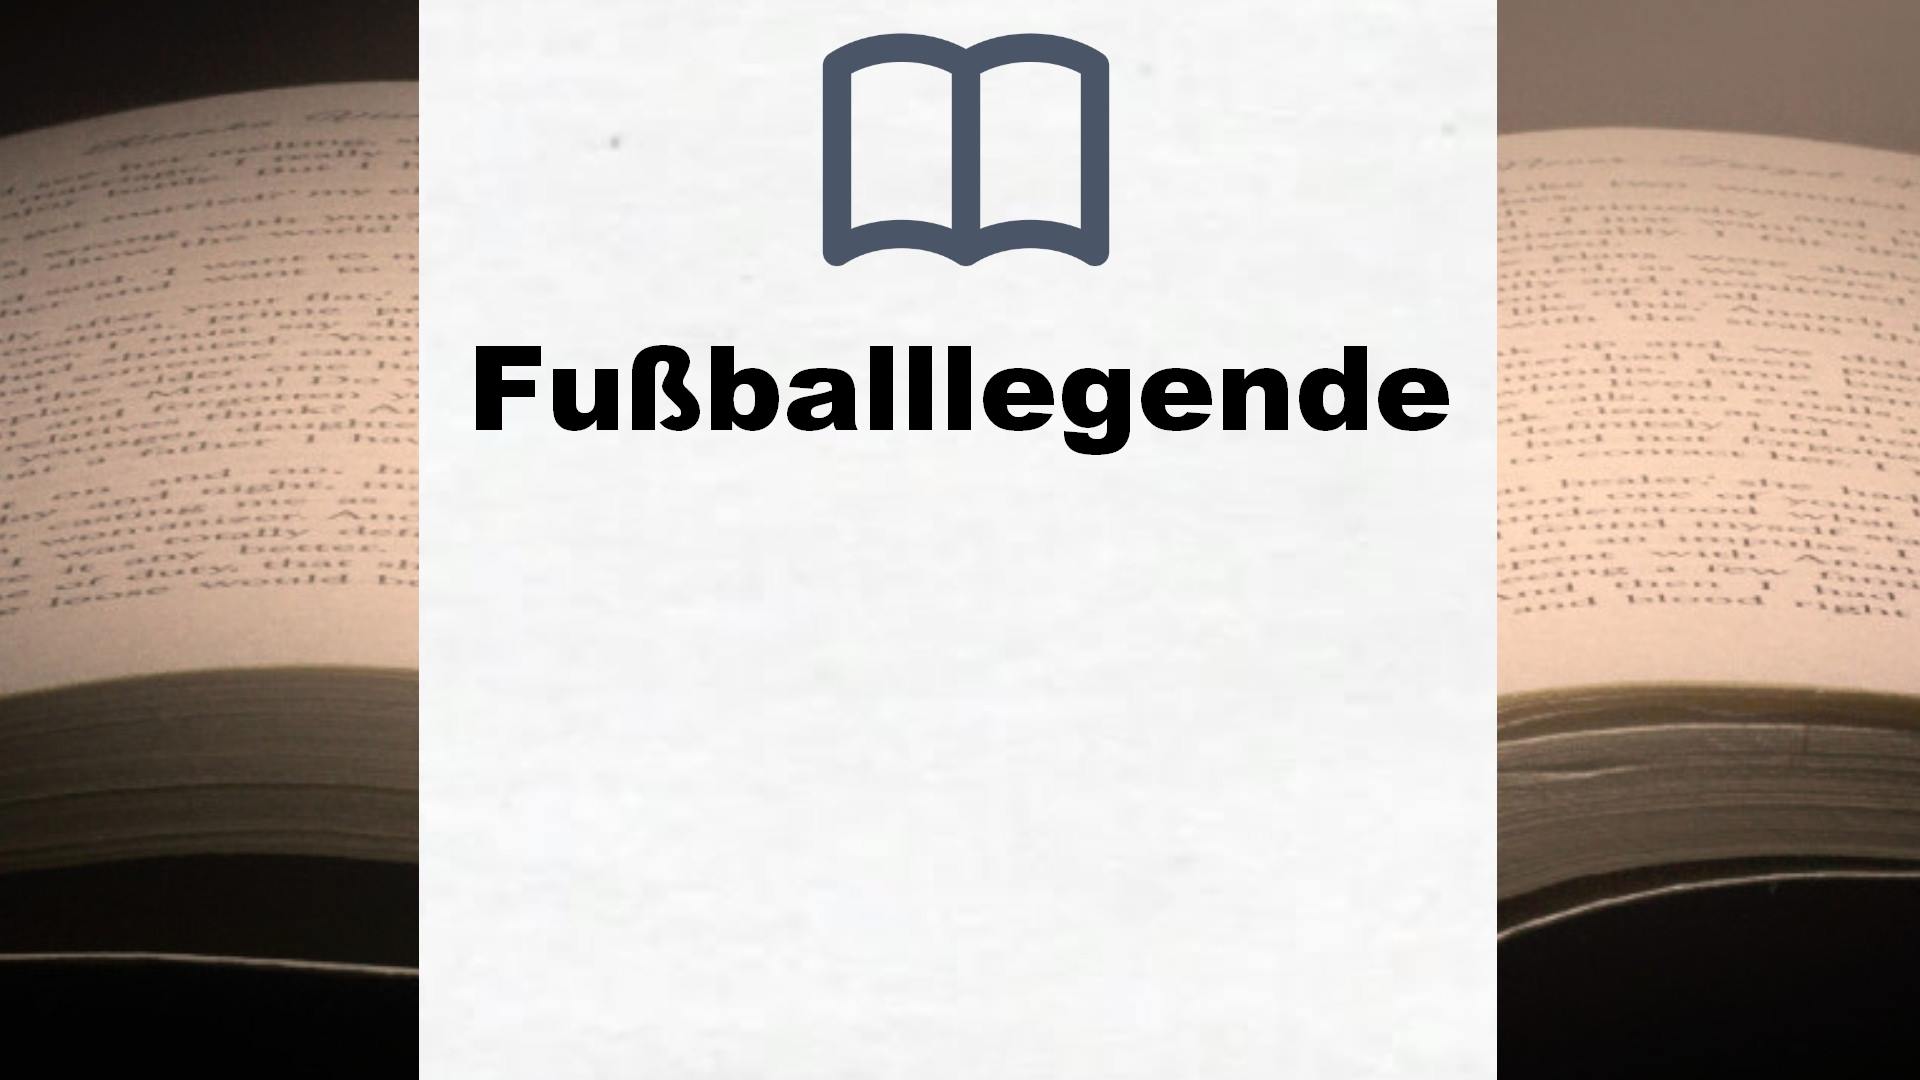 Bücher über Fußballlegenden